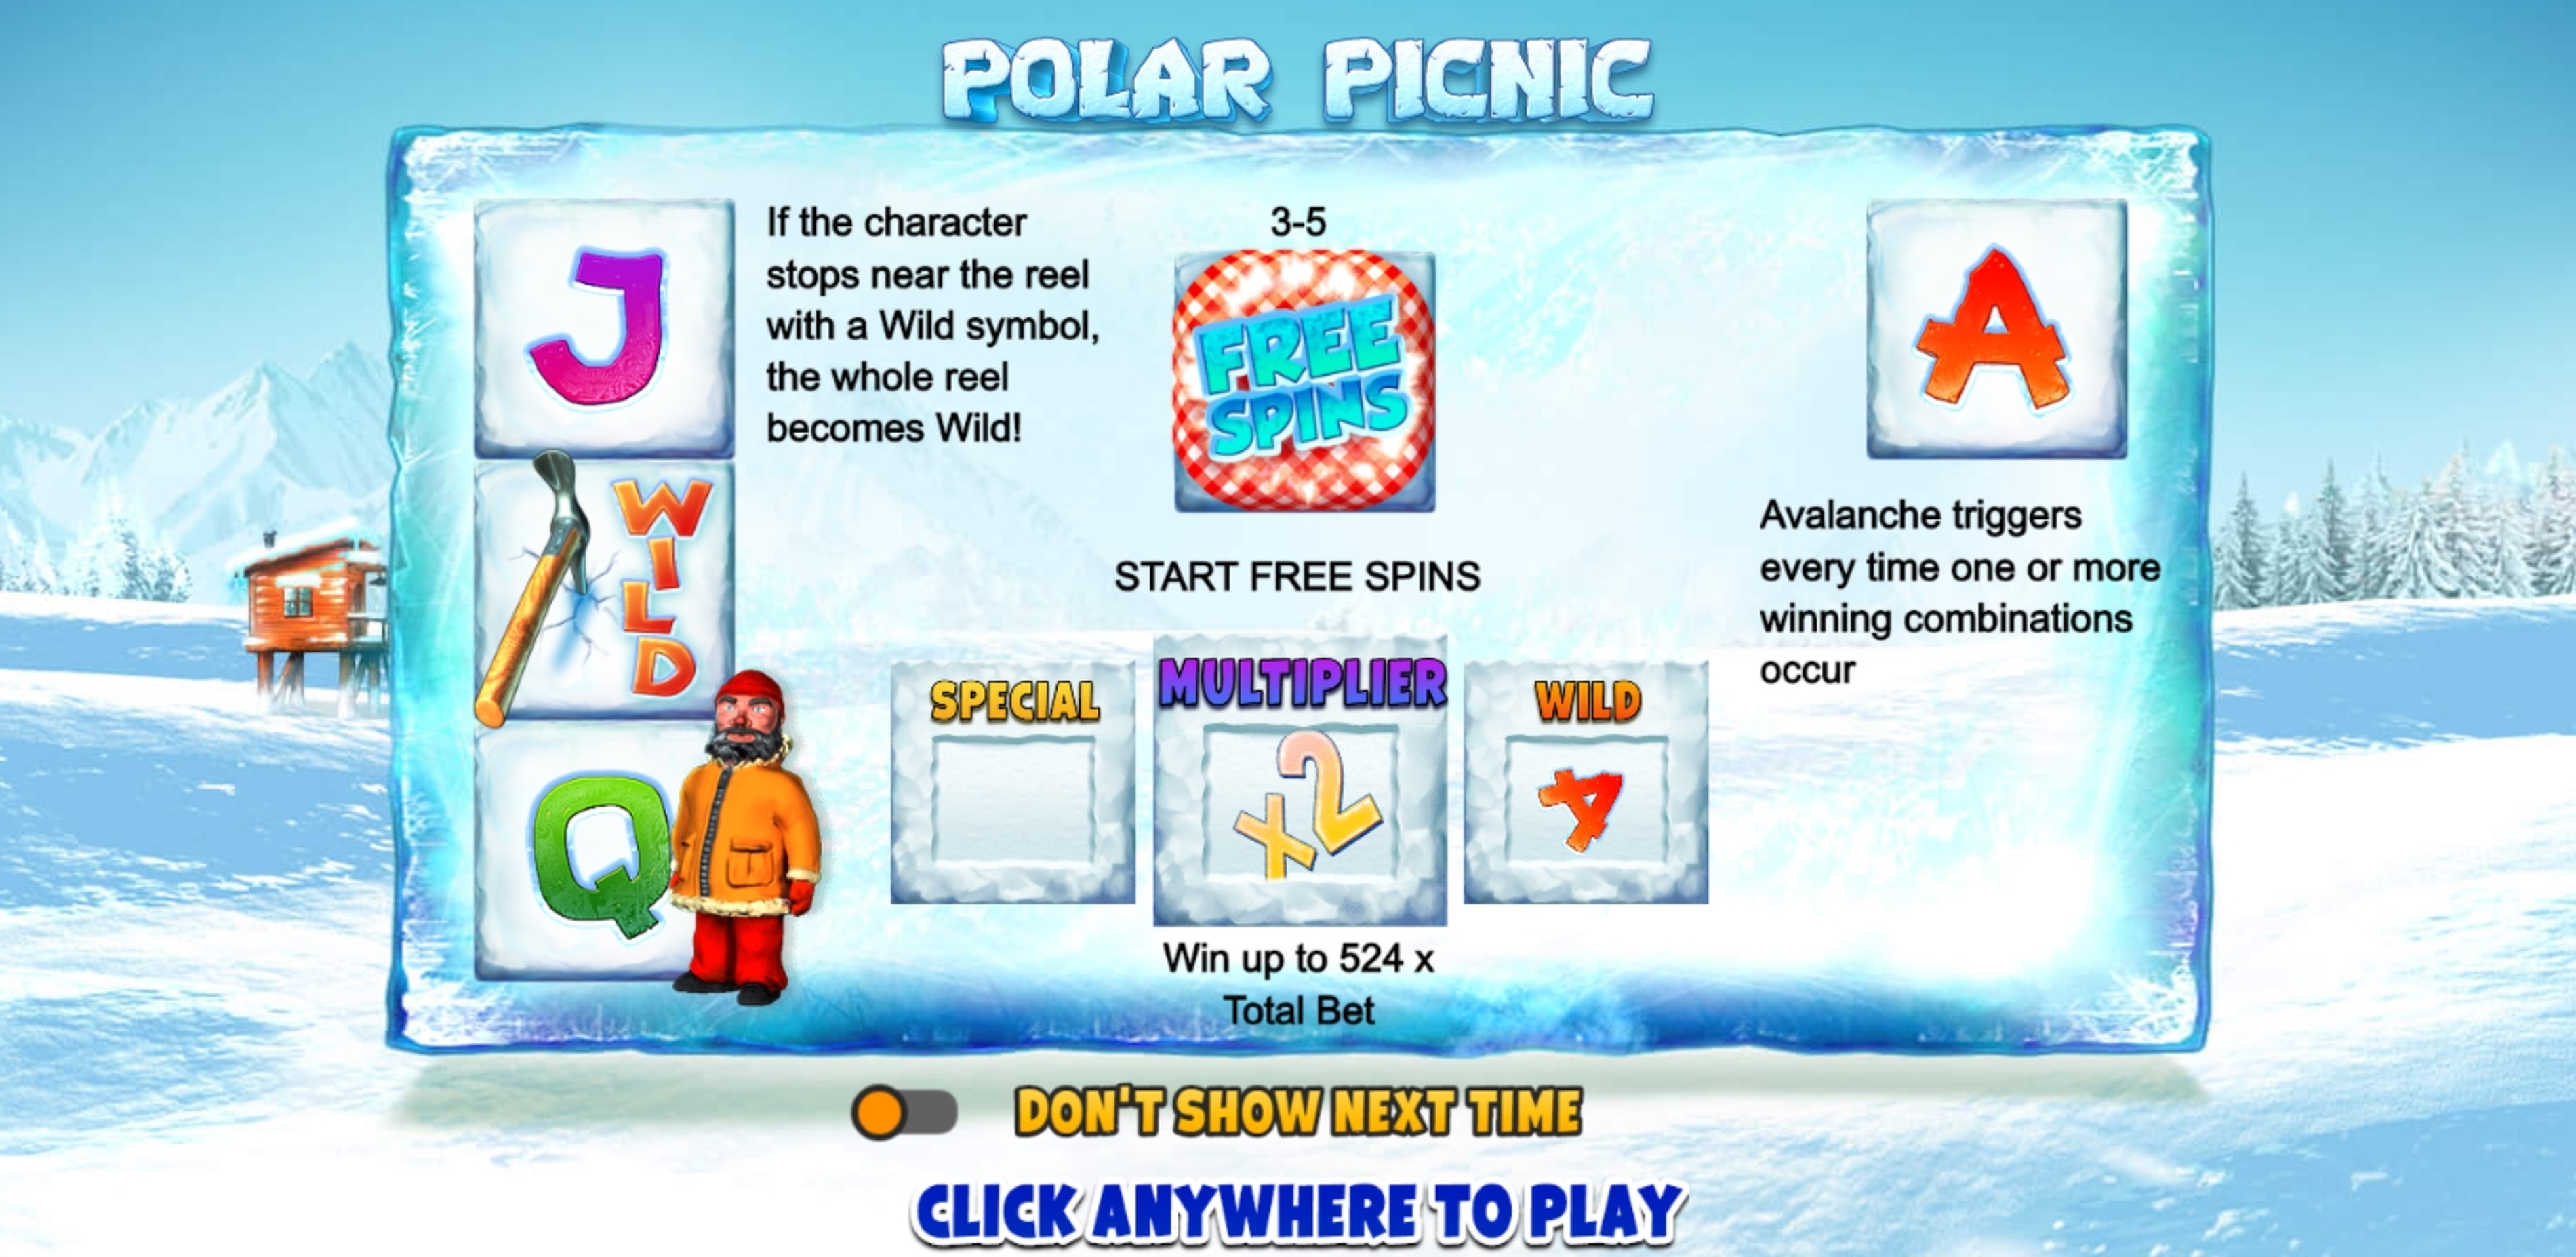 Play Polar Picnic Free Casino Slot Game by FUGA Gaming